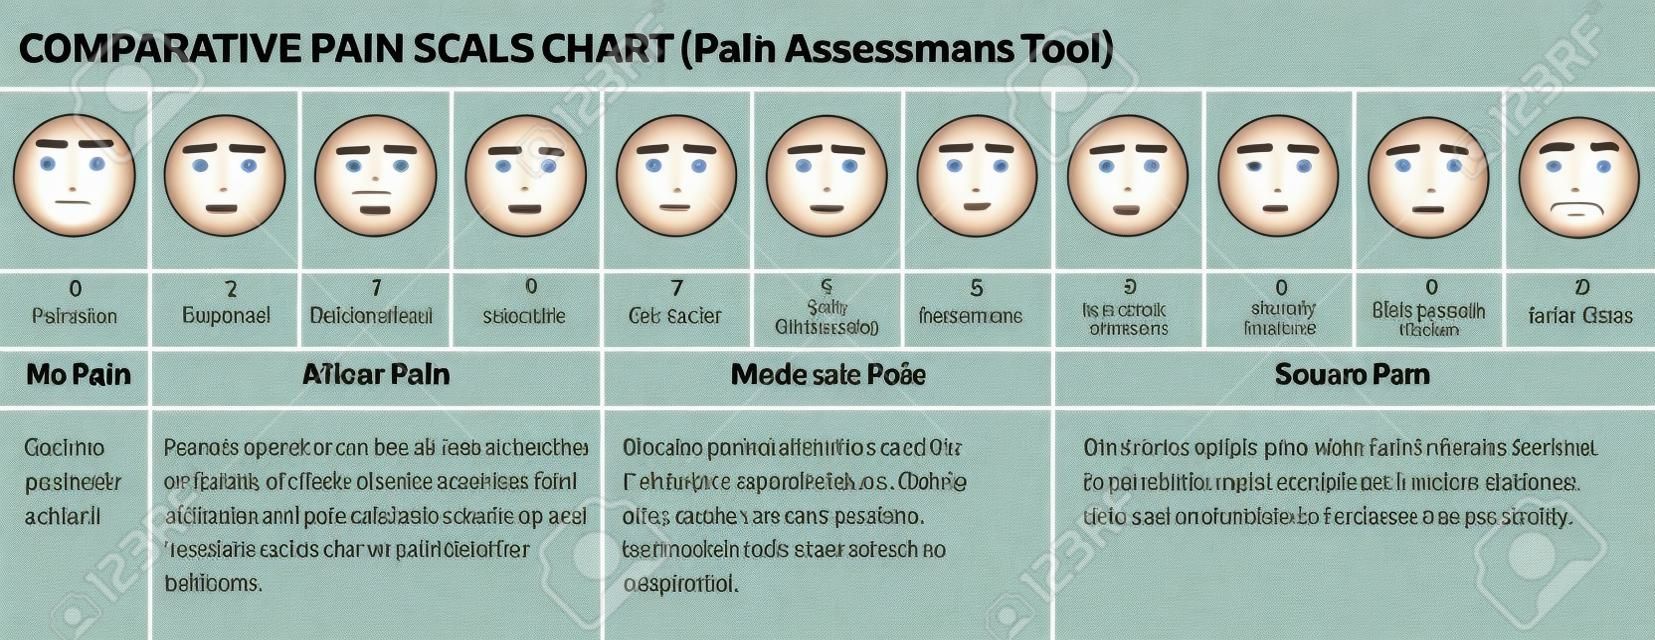 Faces escala de dor. Escala de avaliação de dor dos médicos. Gráfico comparativo de escala de dor. Faces ferramenta de classificação de dor. Gráfico de dor visual.